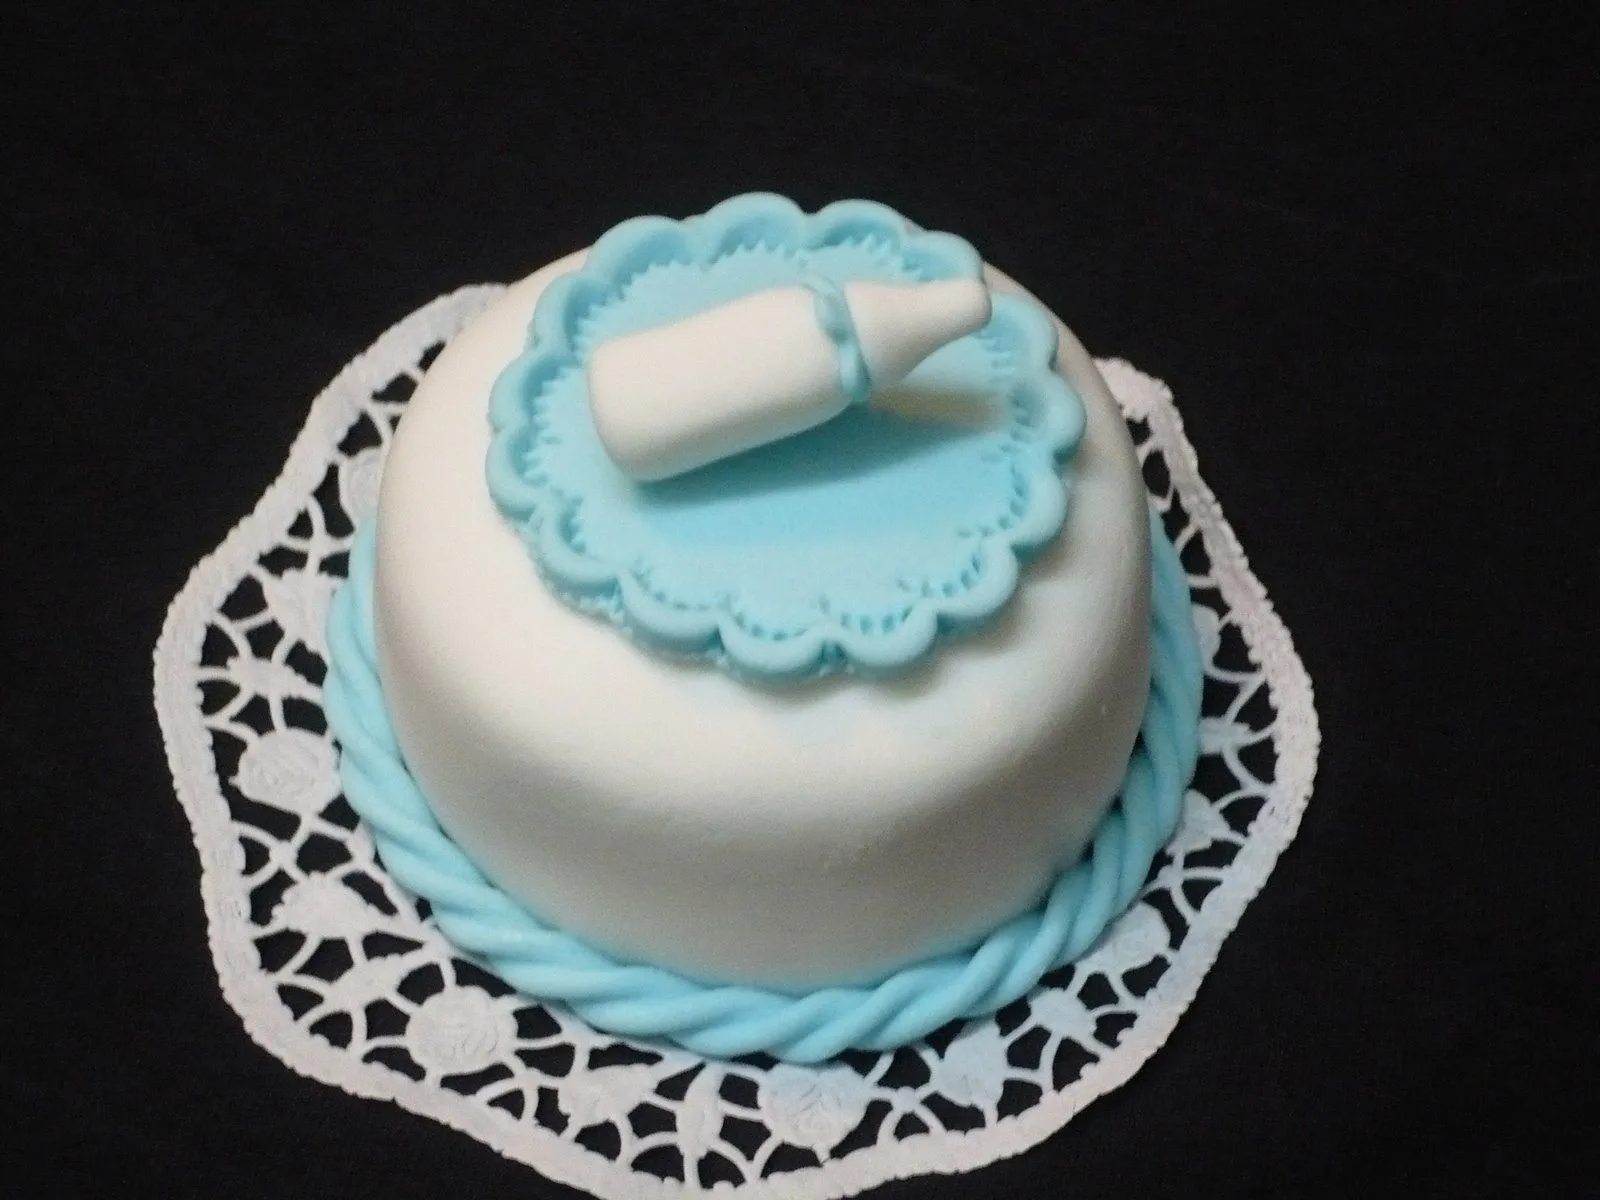  tortas para souvenirs de nacimiento bautismo cumpleanos bodas y para ...